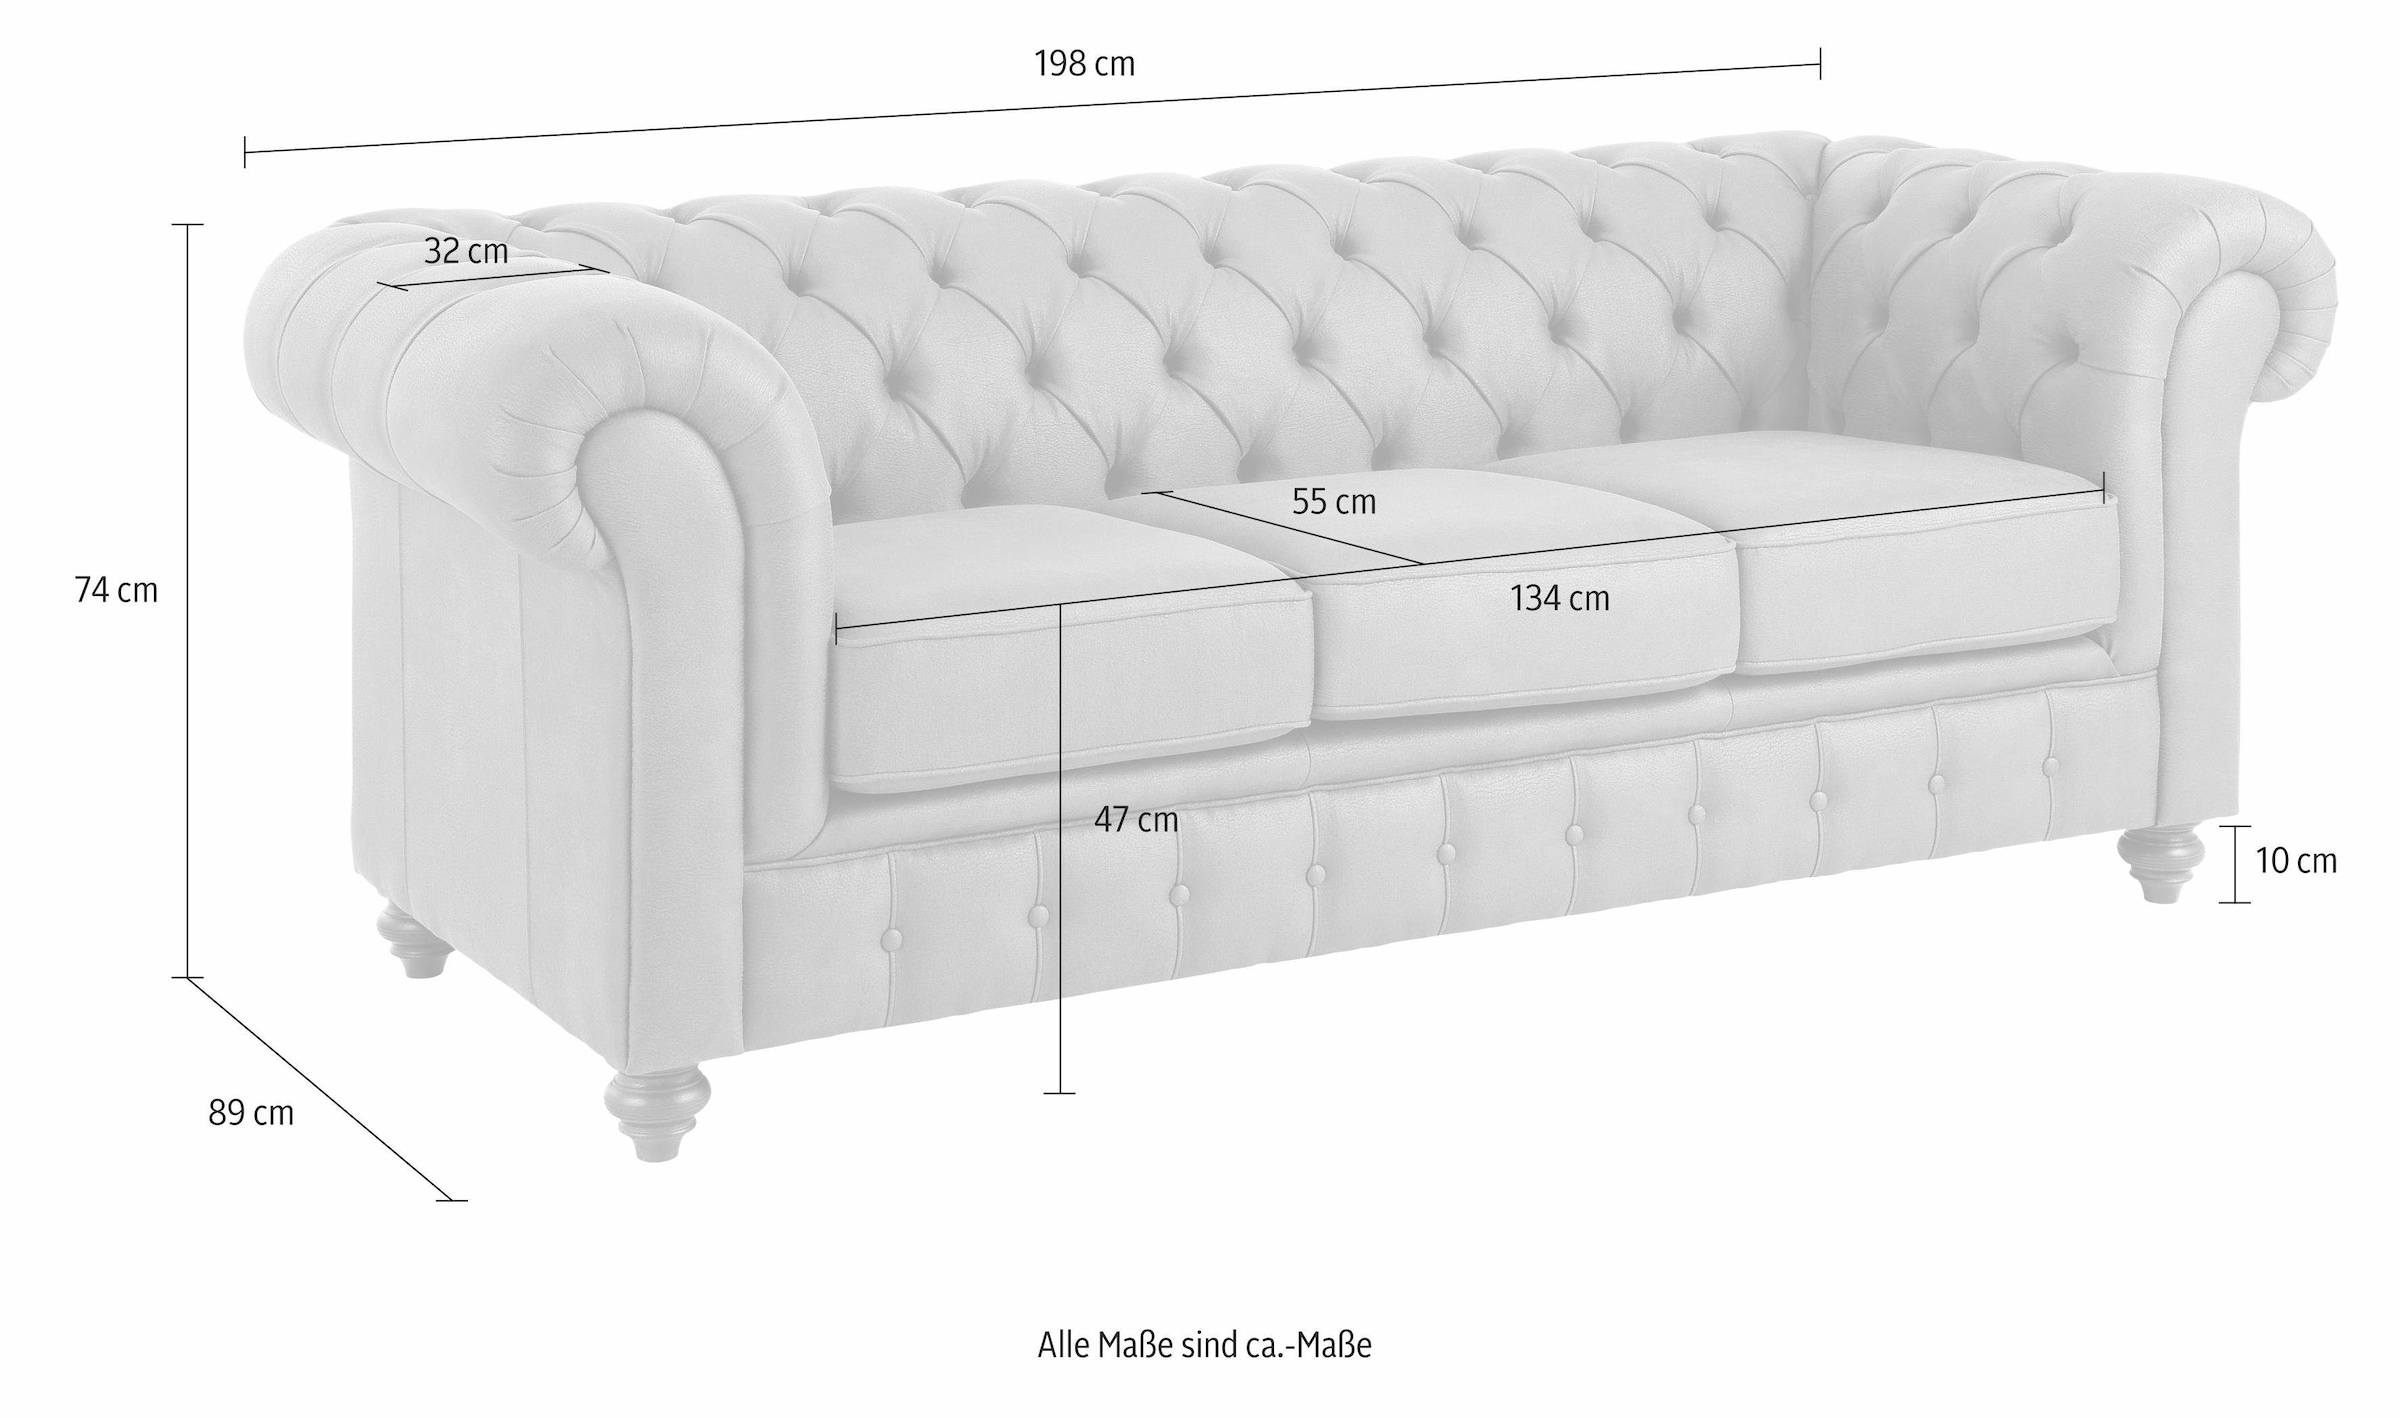 Home affaire Chesterfield-Sofa »Chesterfield 3-Sitzer B/T/H: 198/89/74 cm«, mit hochwertiger Knopfheftung, auch in Leder